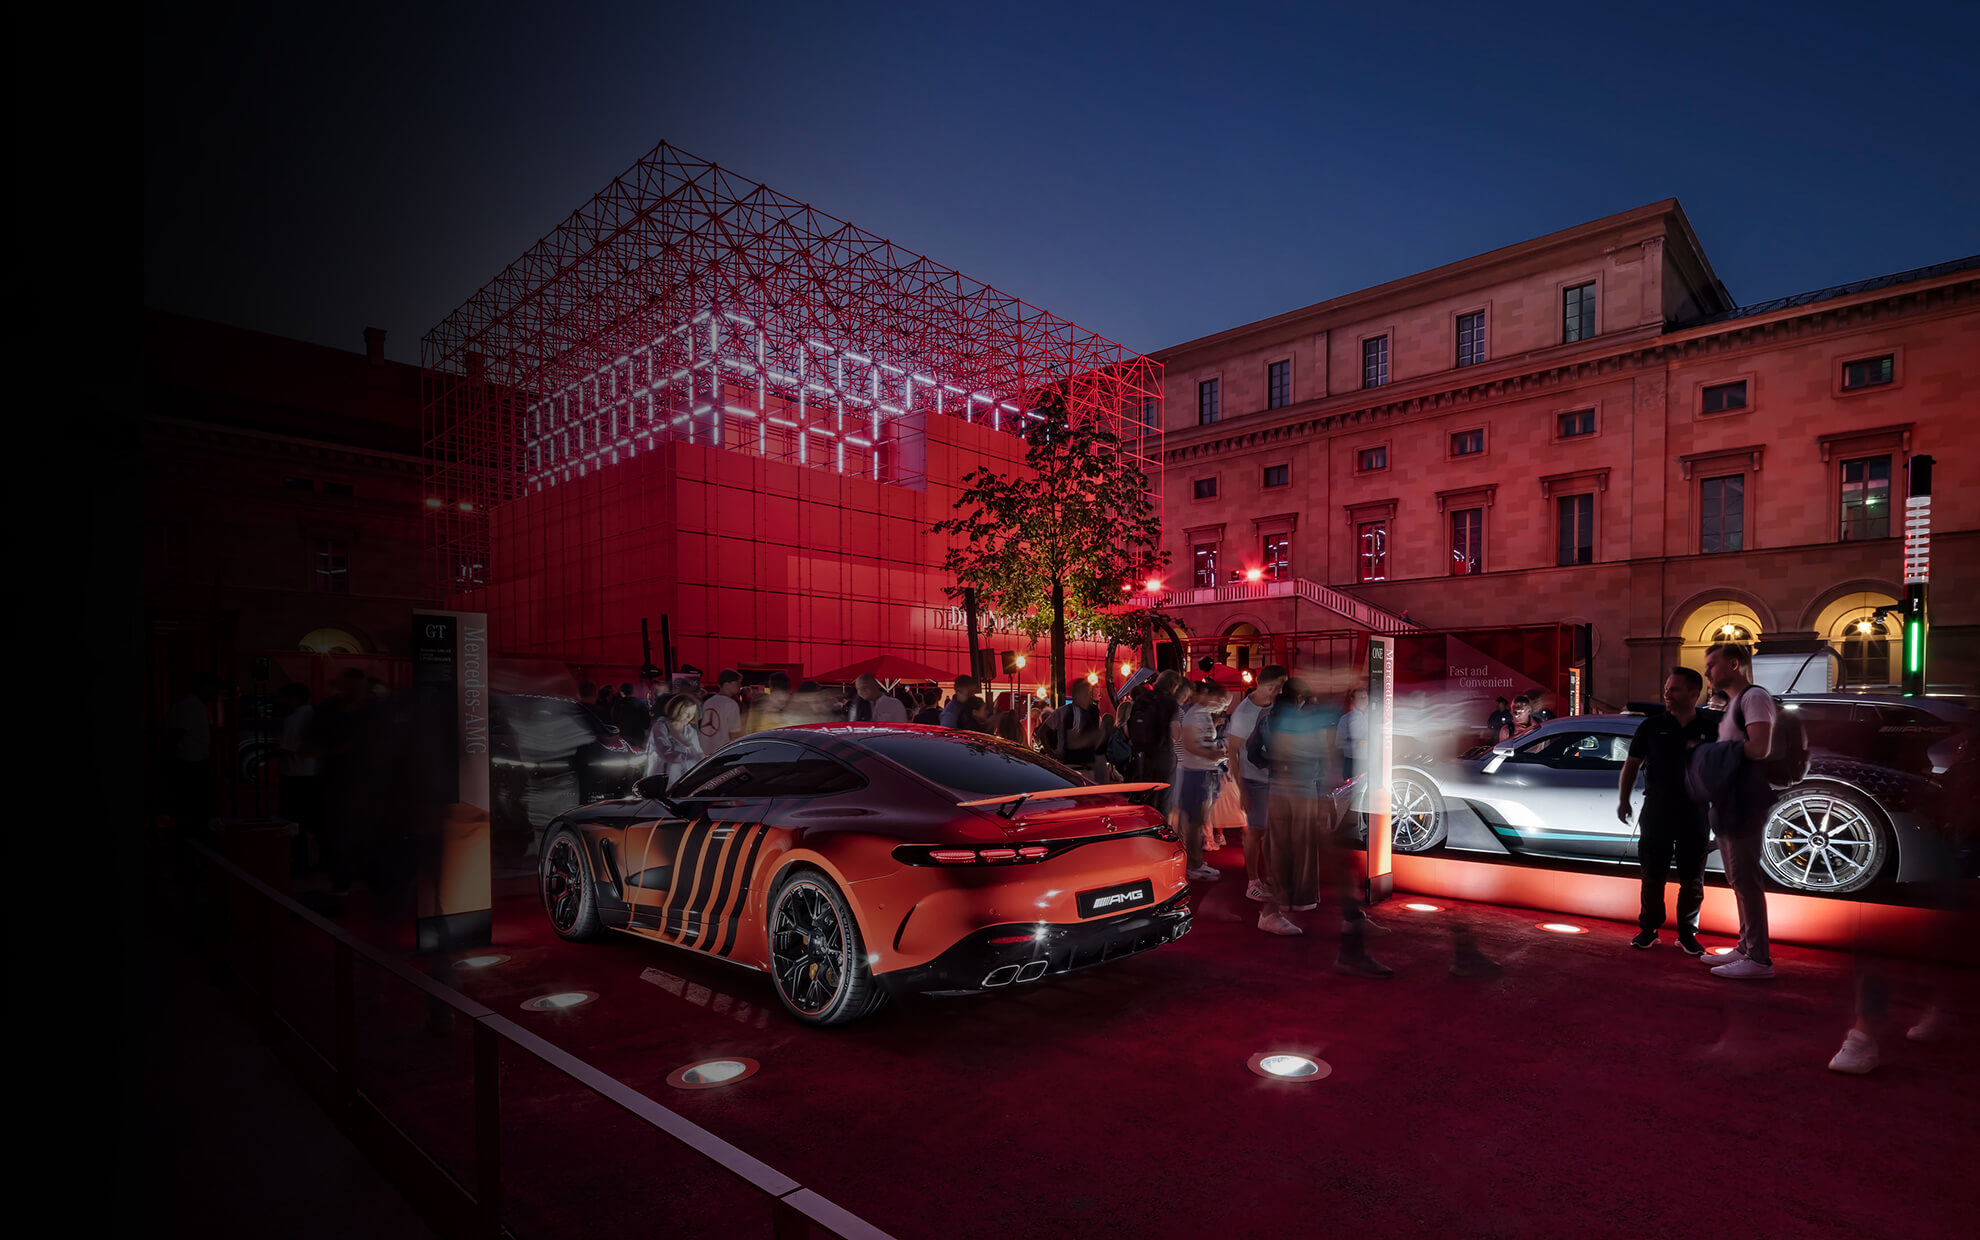 Messebauunternehmen Display International realisiert Messestand von Mercedes-Benz auf der IAA mobility in München